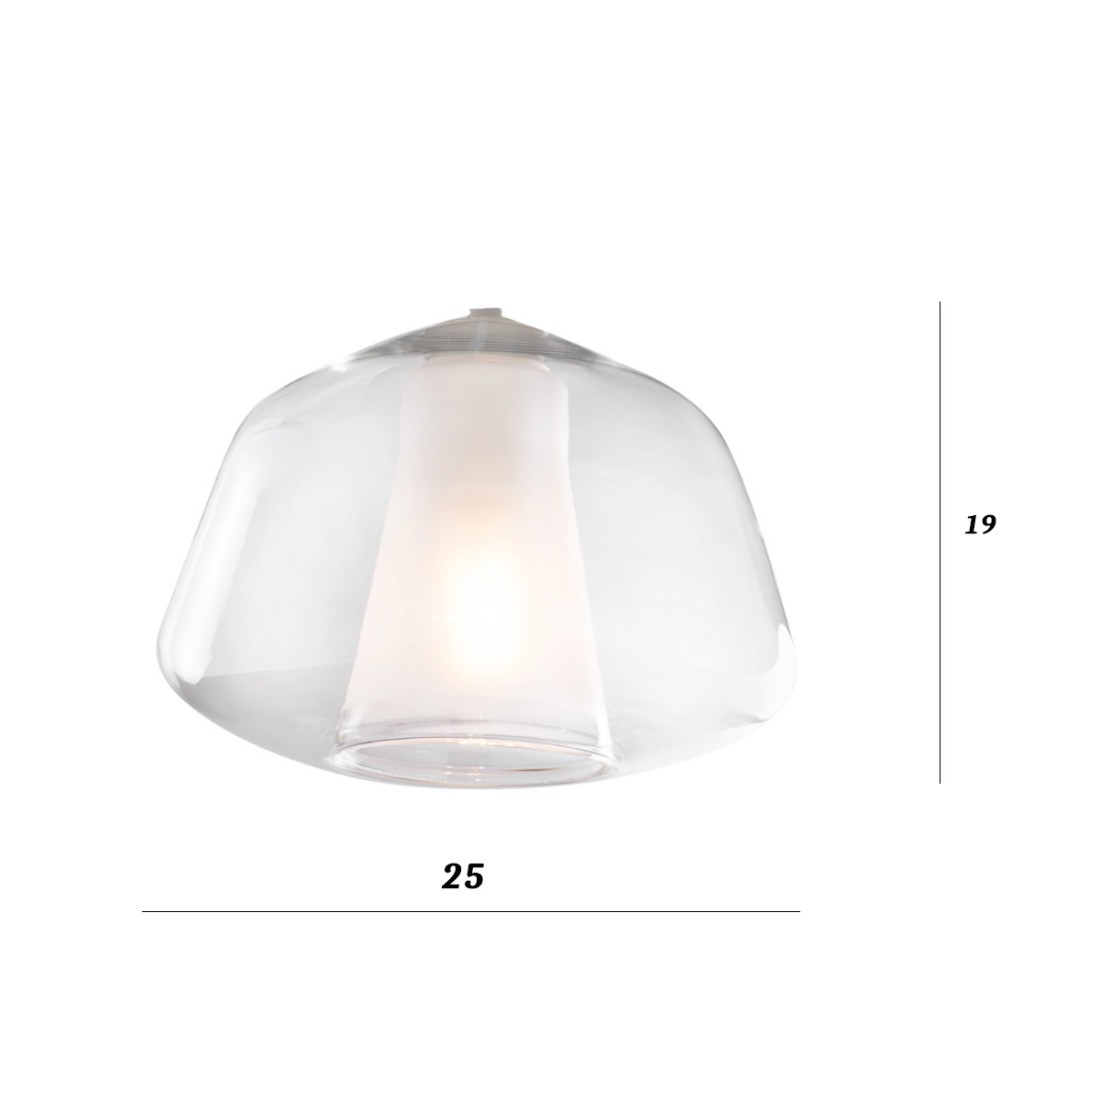 Lámpara de araña clásica Top Light DOUBLE SKIN 1176OS S7 R